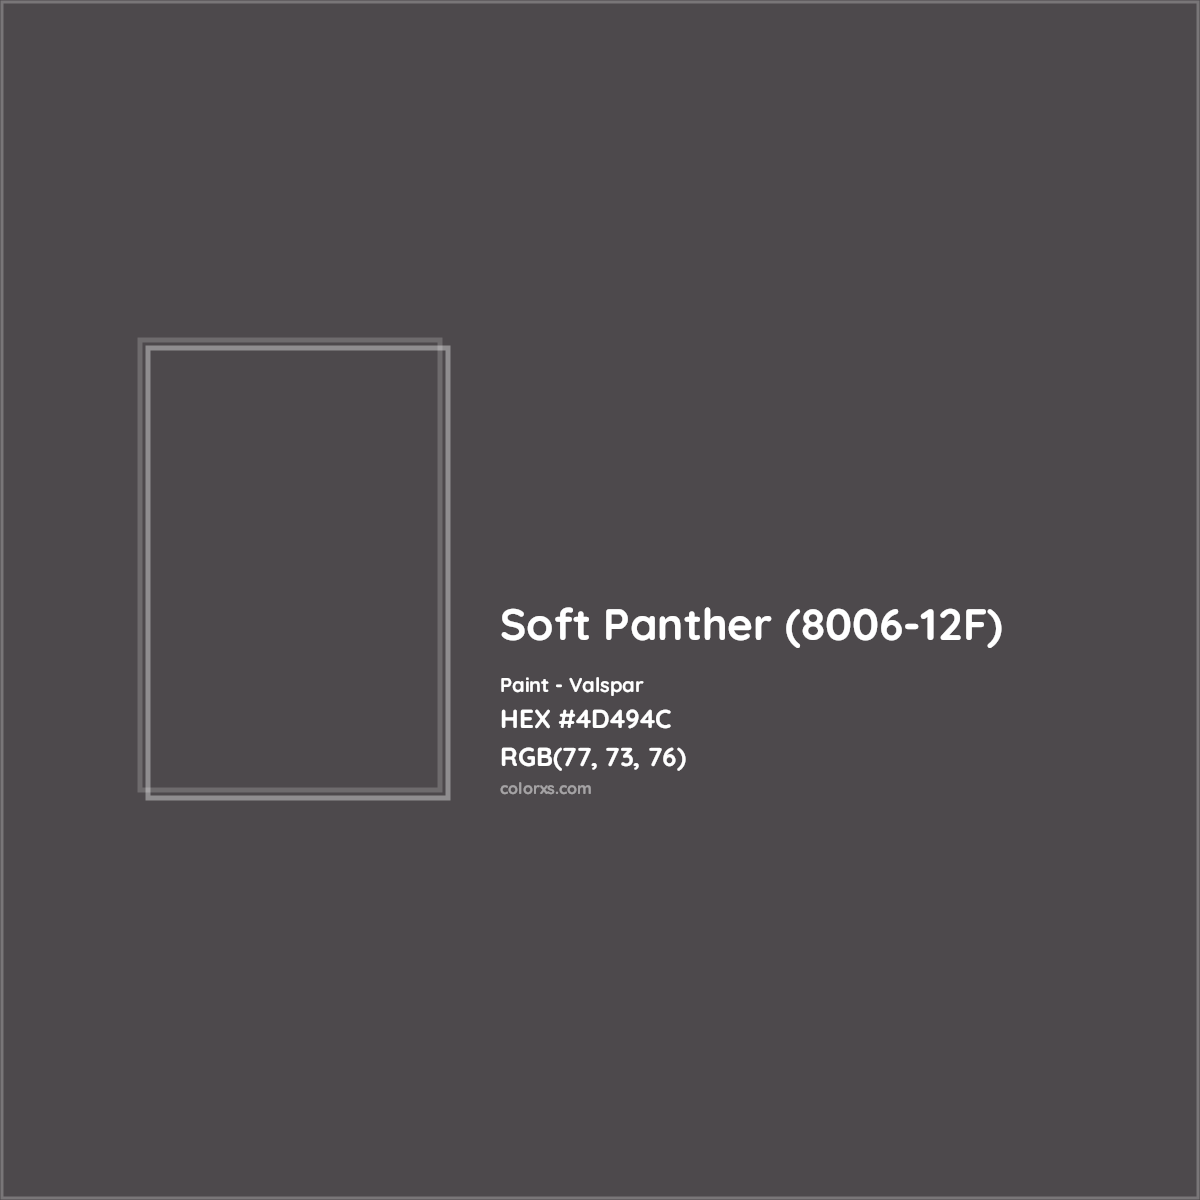 HEX #4D494C Soft Panther (8006-12F) Paint Valspar - Color Code